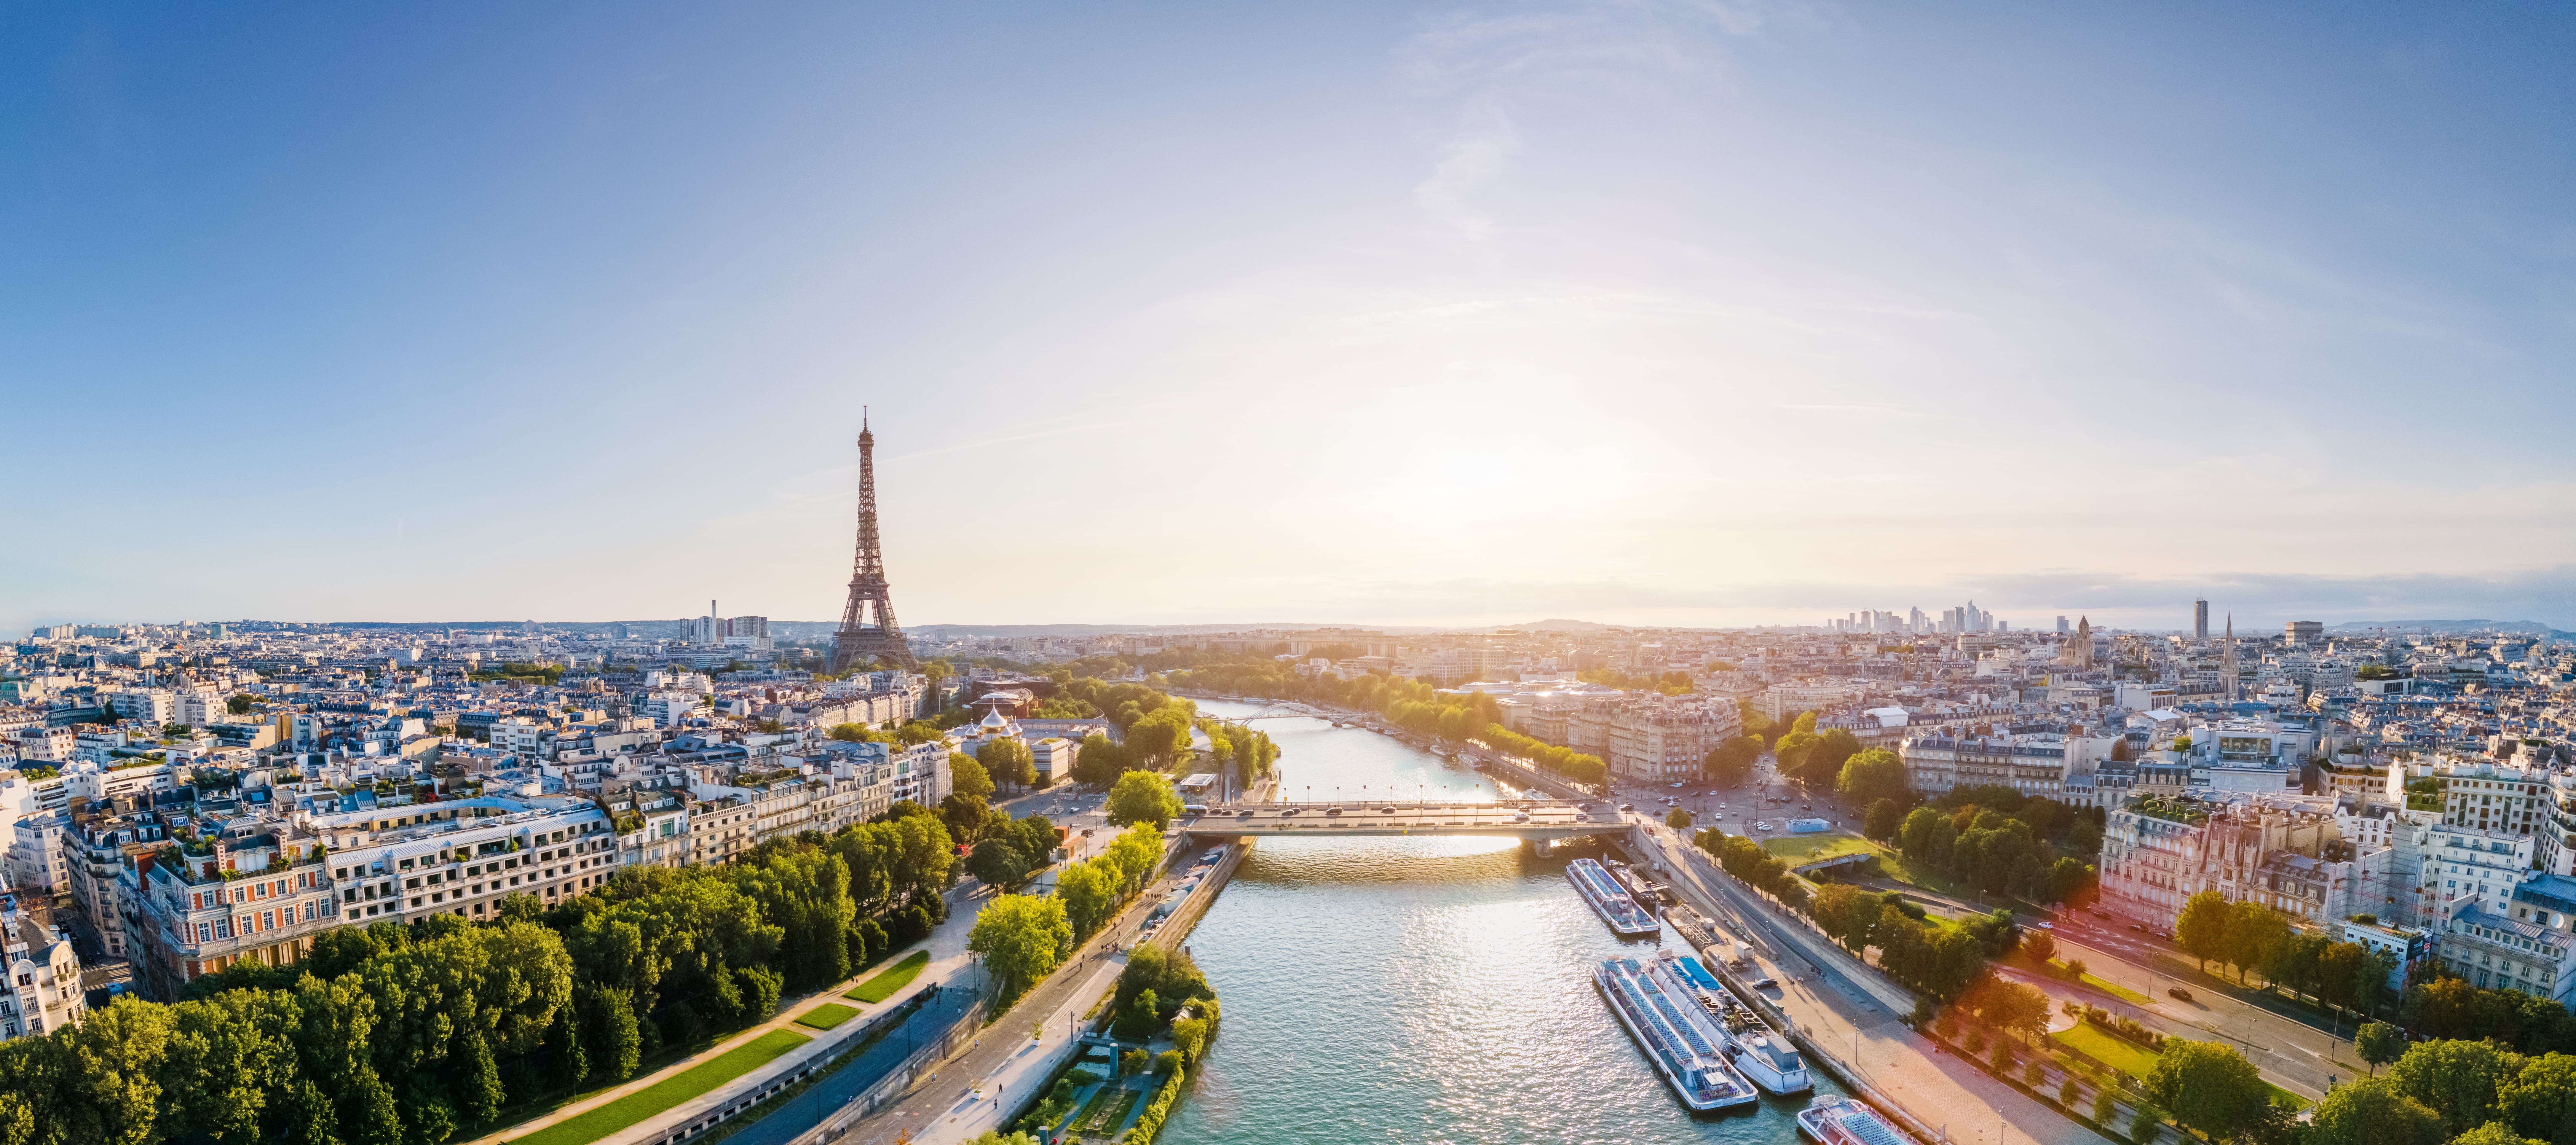 Cómo Leapfrog Geothermal ayuda a definir el futuro energético de la cuenca parisina